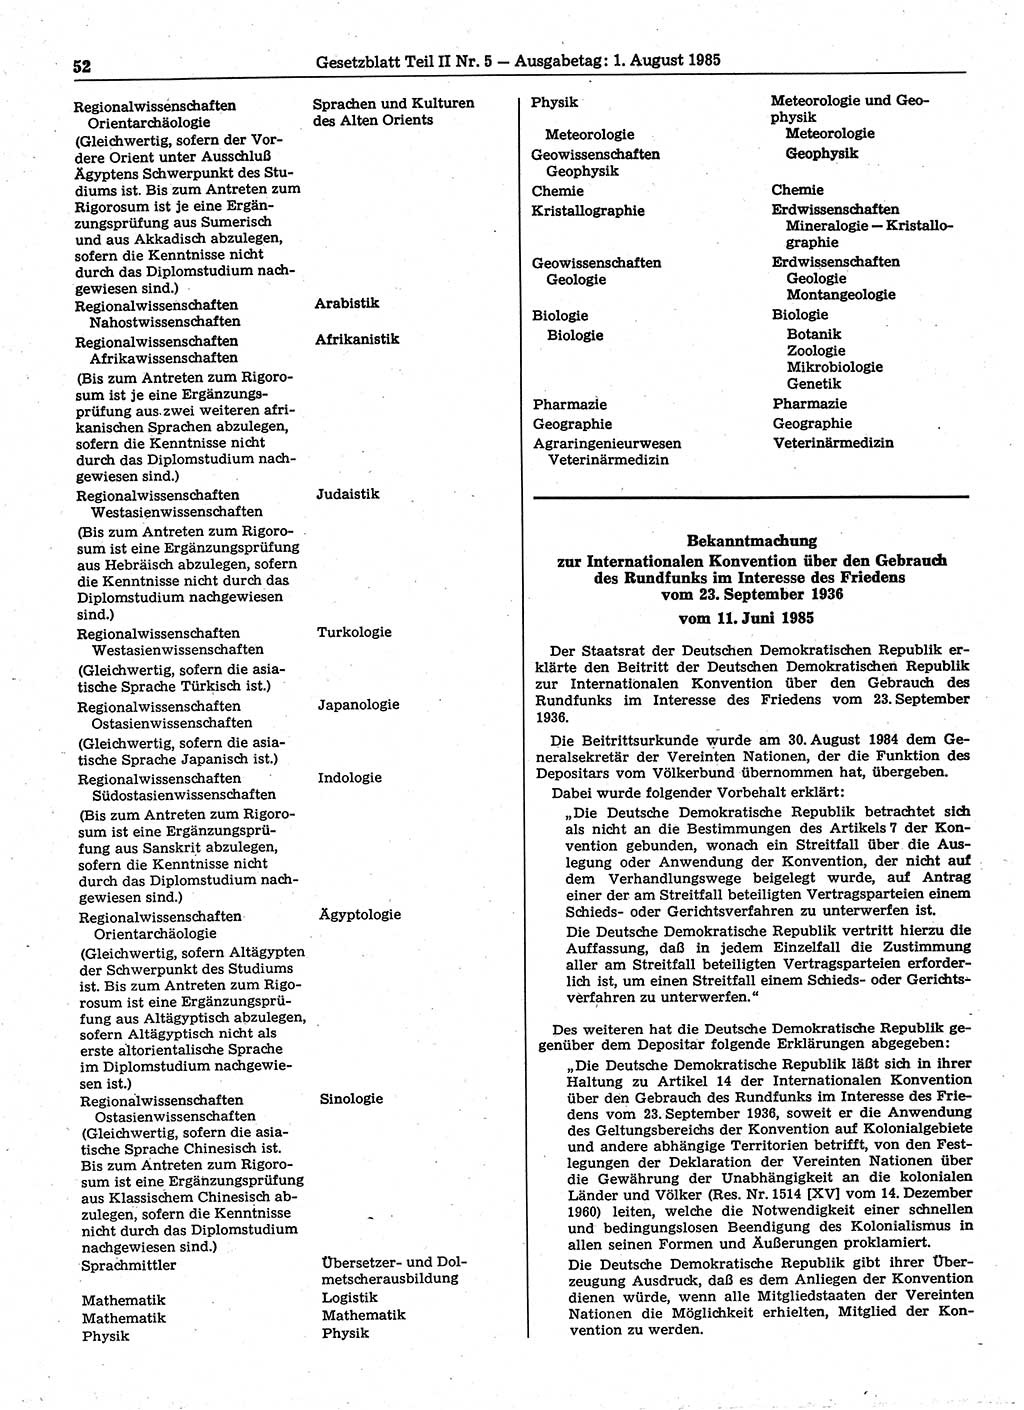 Gesetzblatt (GBl.) der Deutschen Demokratischen Republik (DDR) Teil ⅠⅠ 1985, Seite 52 (GBl. DDR ⅠⅠ 1985, S. 52)